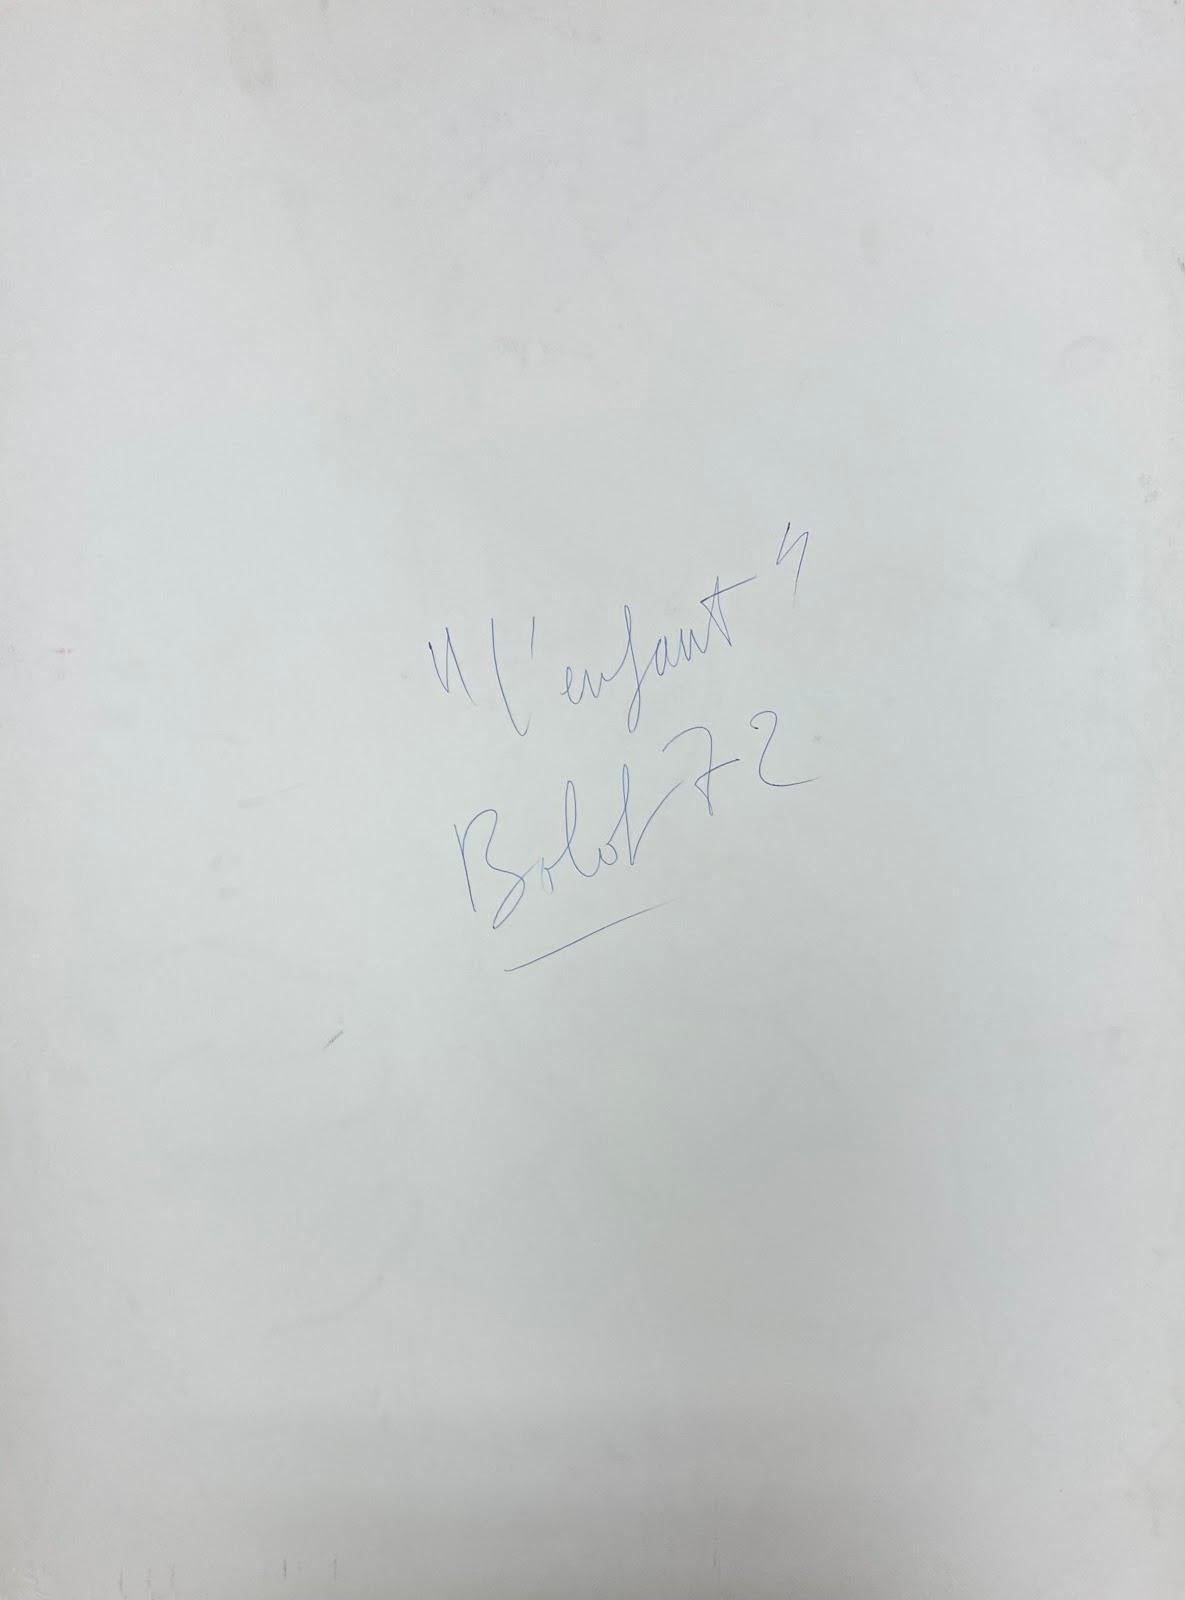 von Paul-Louis Bolot (Französisch 1918-2003)
unterzeichnet
Original-Gouache-Gemälde auf dickem Papier/Karton
ungerahmt
Zustand: sehr gut und solide; die Ränder haben ein paar Wölbungen und Schrammen/Kanteneinrisse, die nach dem Abflachen oder